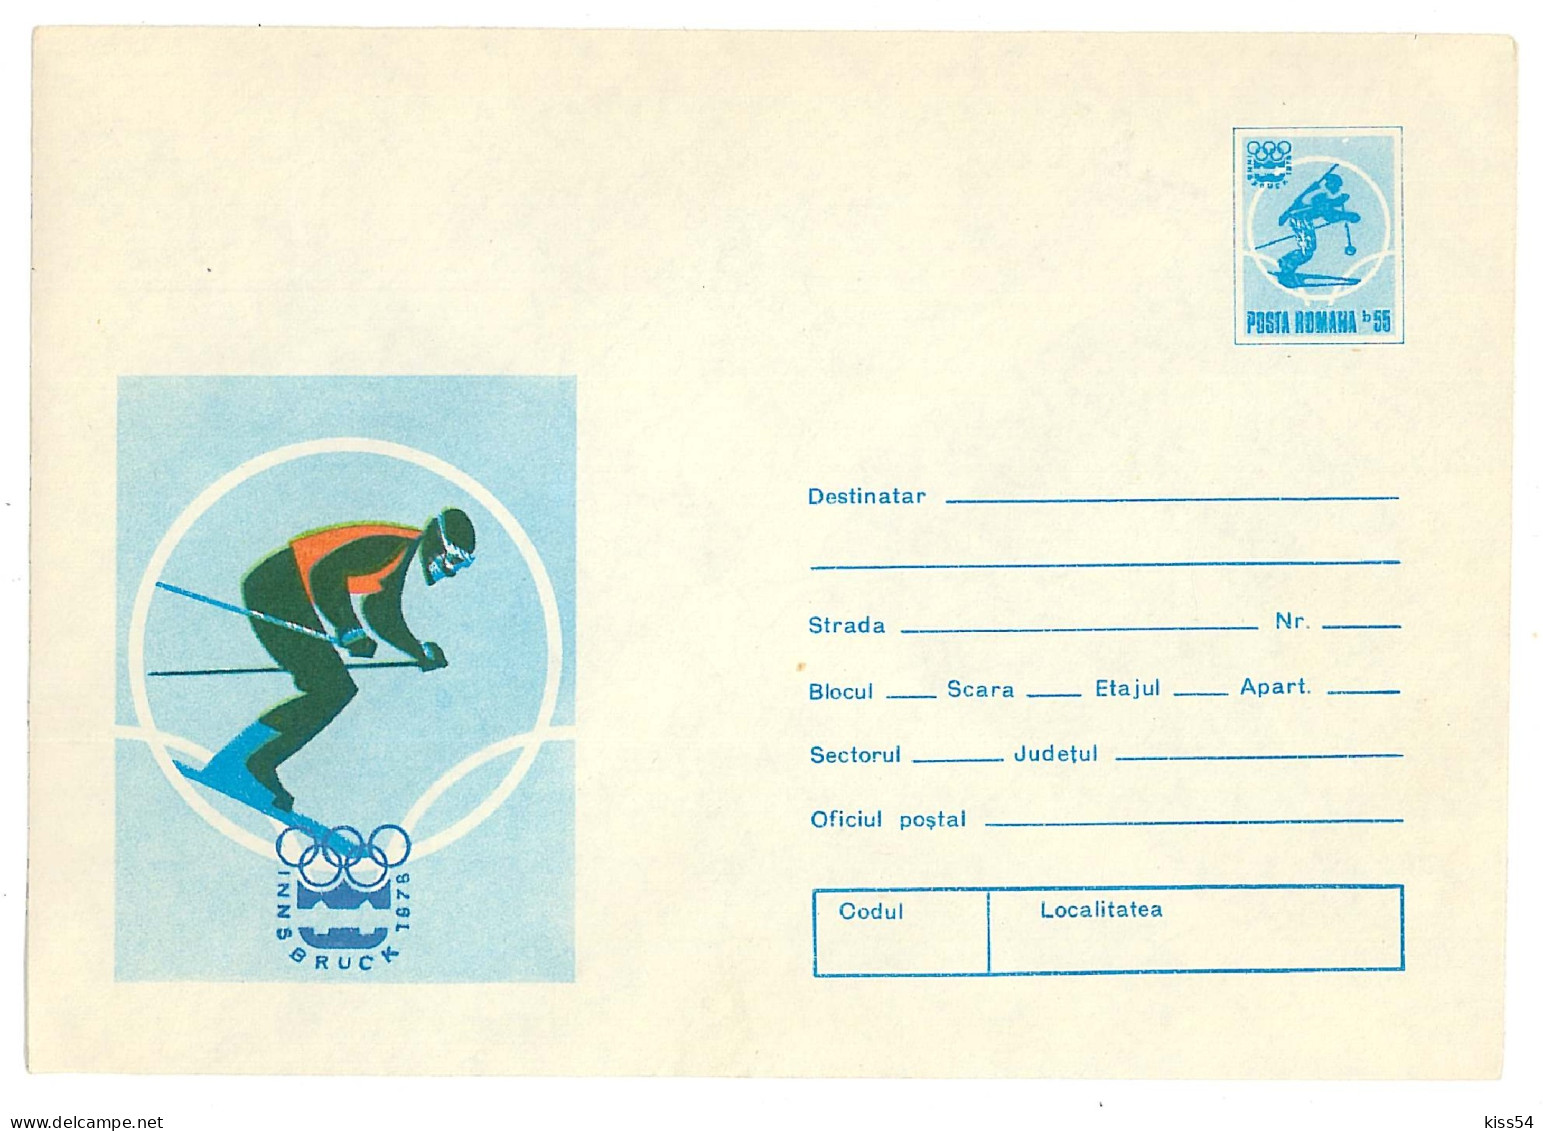 IP 75 - 443 INNSBRUCK, Olimpic Games, SKI, Romania - Stationery - Unused - 1975 - Postal Stationery